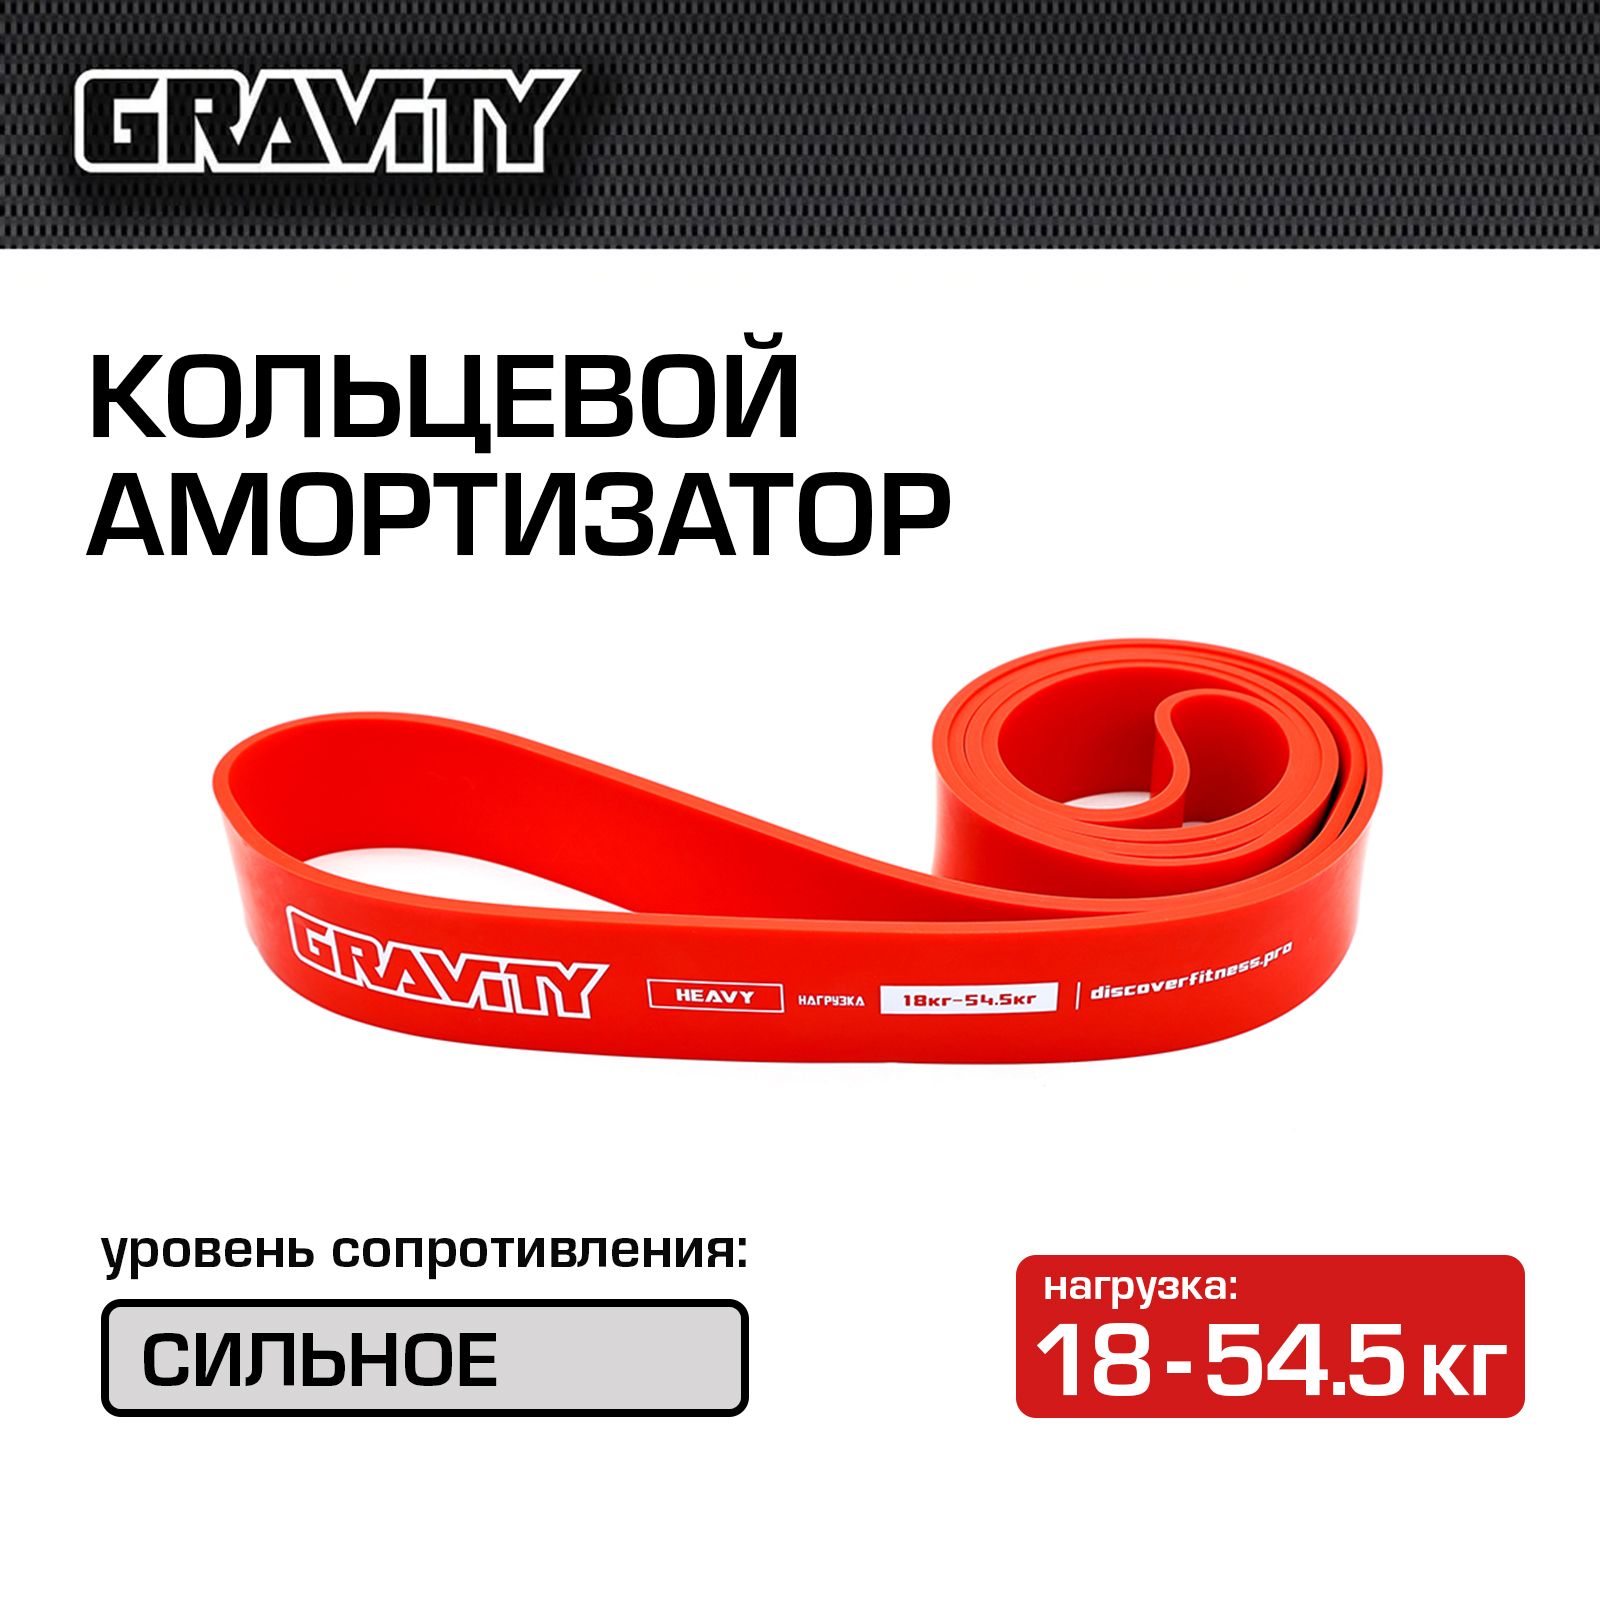 Кольцевой амортизатор Gravity, красный